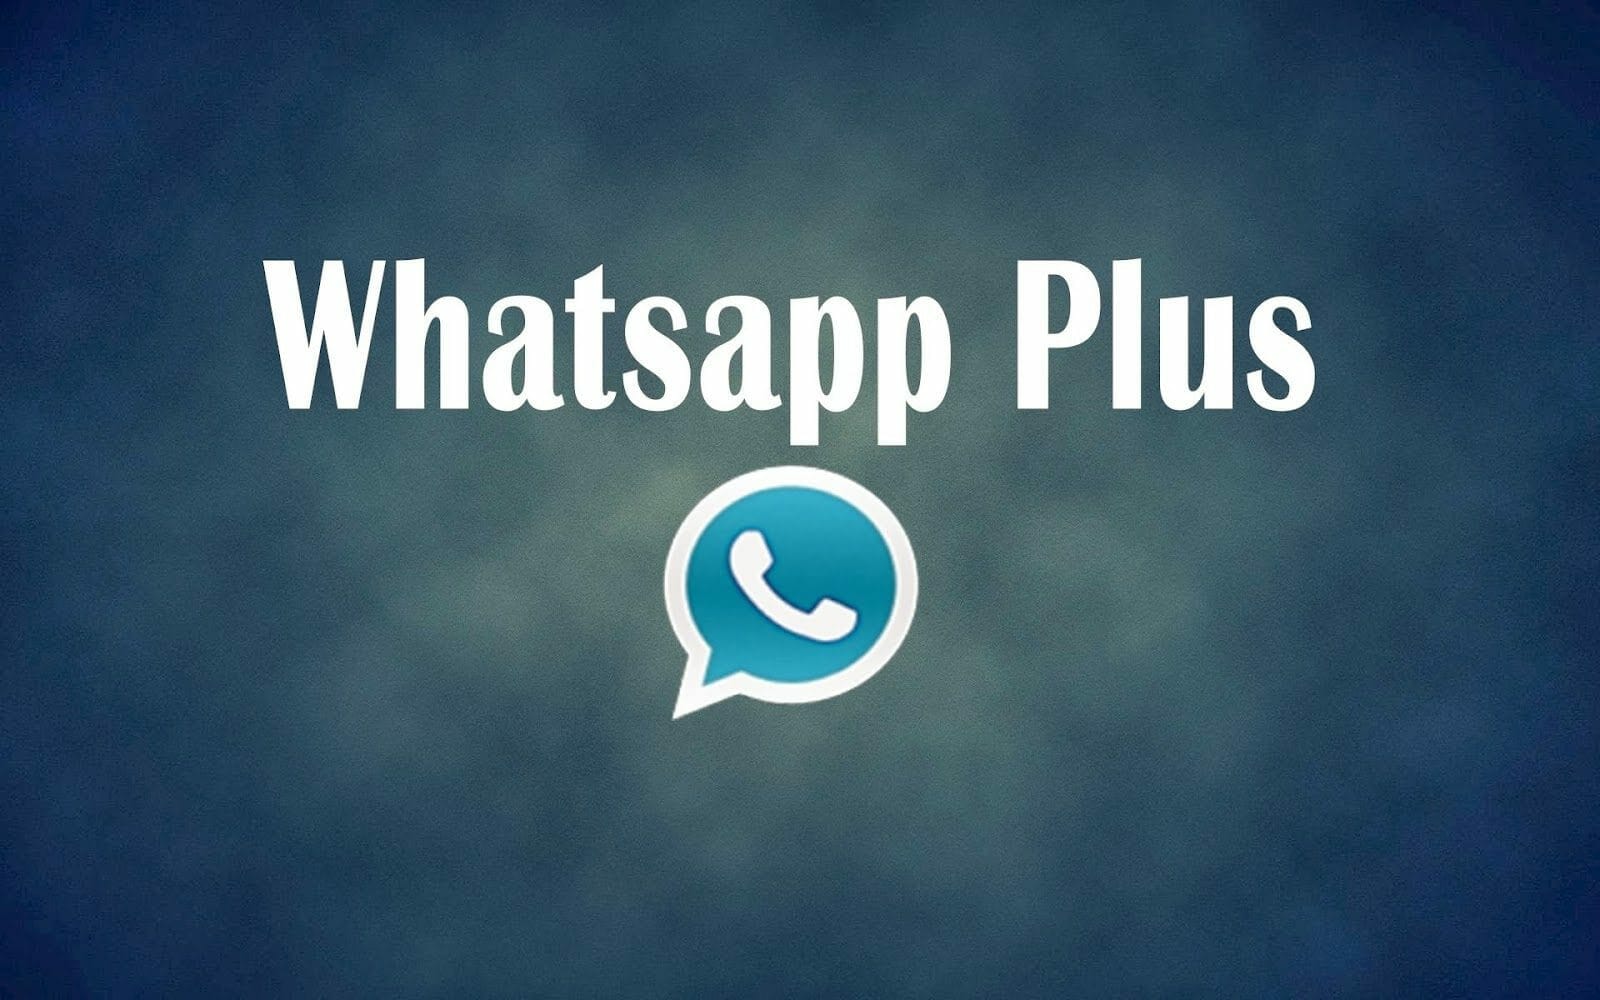 whatsapp plus ios 8